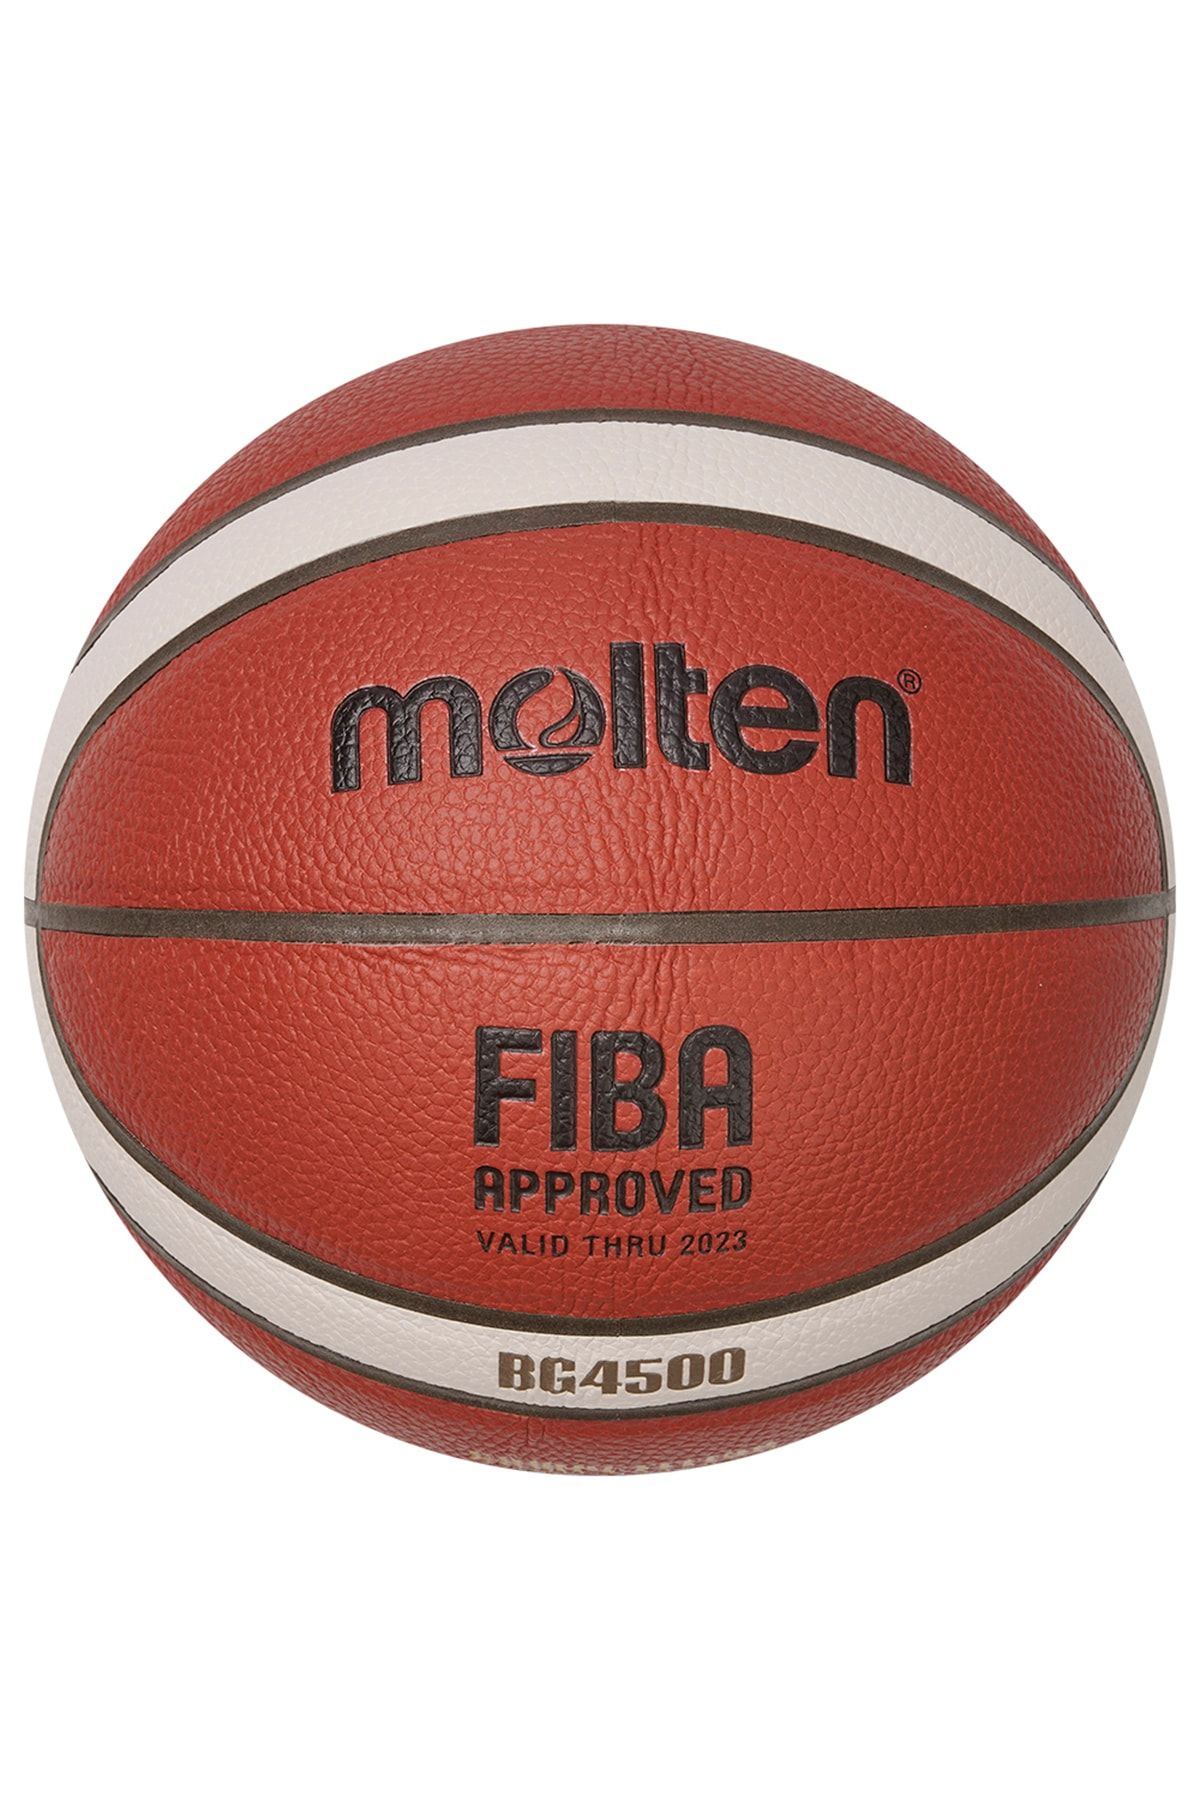 Molten B6g4500 Fıba Onaylı 6 No Tbl Basketbol Maç Topu